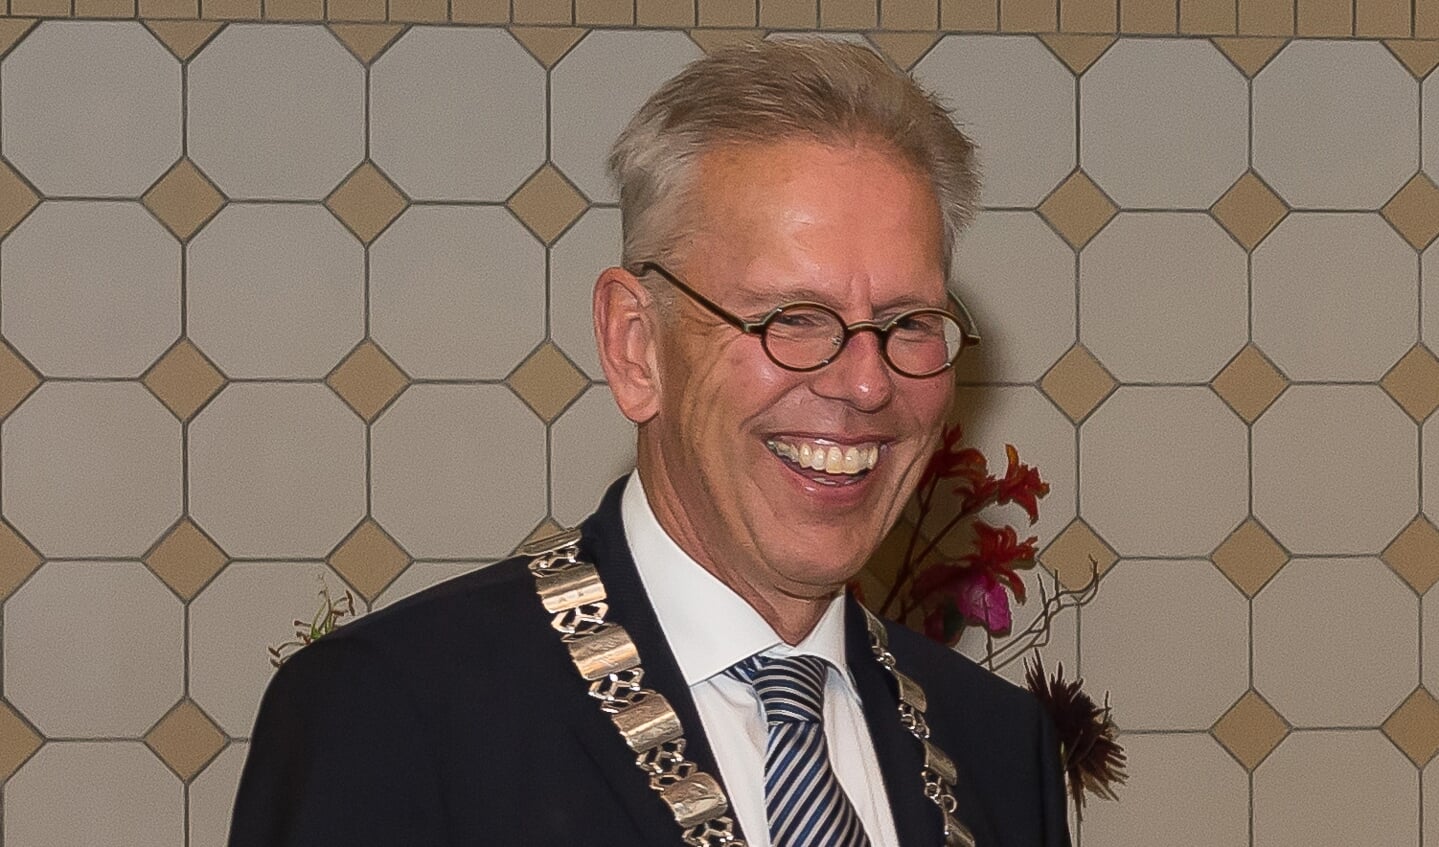 Wie wordt de opvolger van burgemeester Don Bijl?